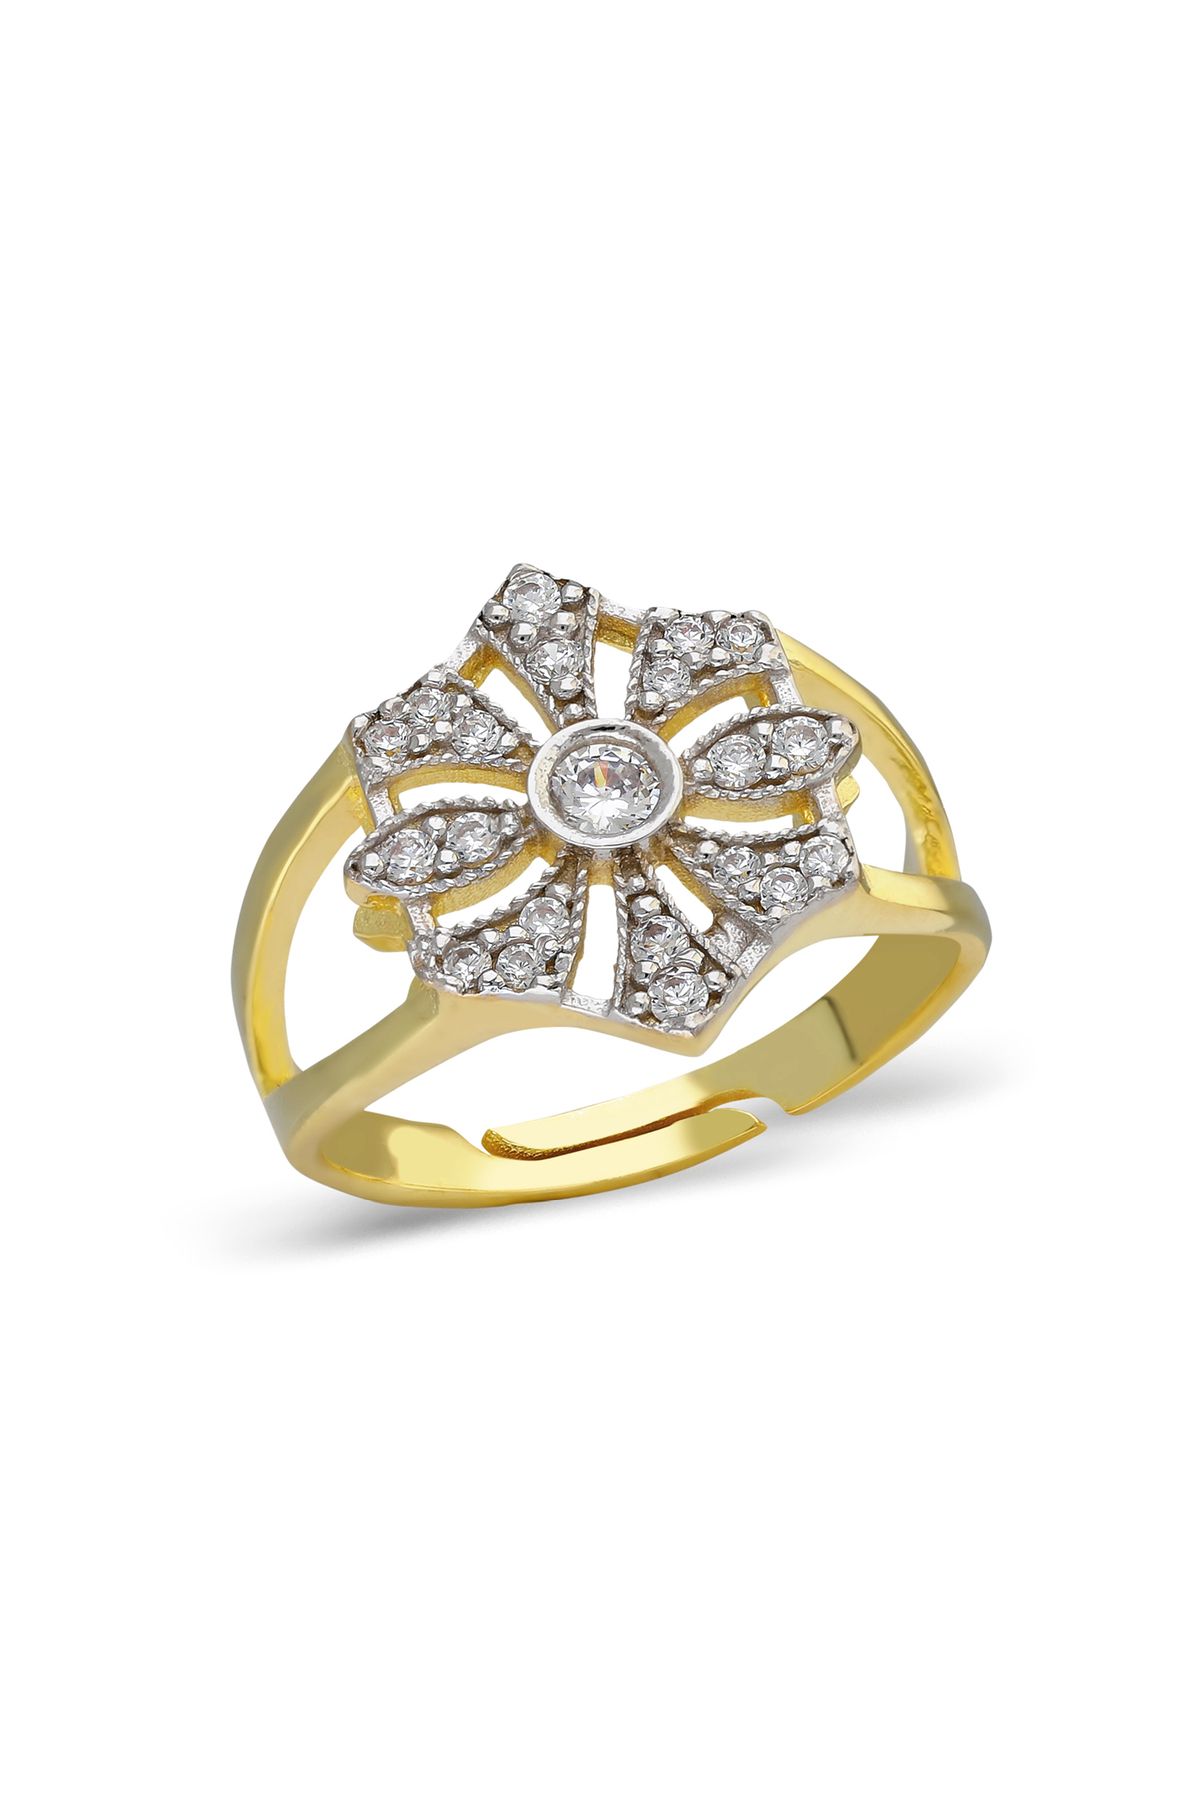 emy by emel luxury silver jewelry Ayarlanabilir Taşlı Daisy Serçe Parmak Yüzüğü Altın Kaplama 925 Ayar Gümüş